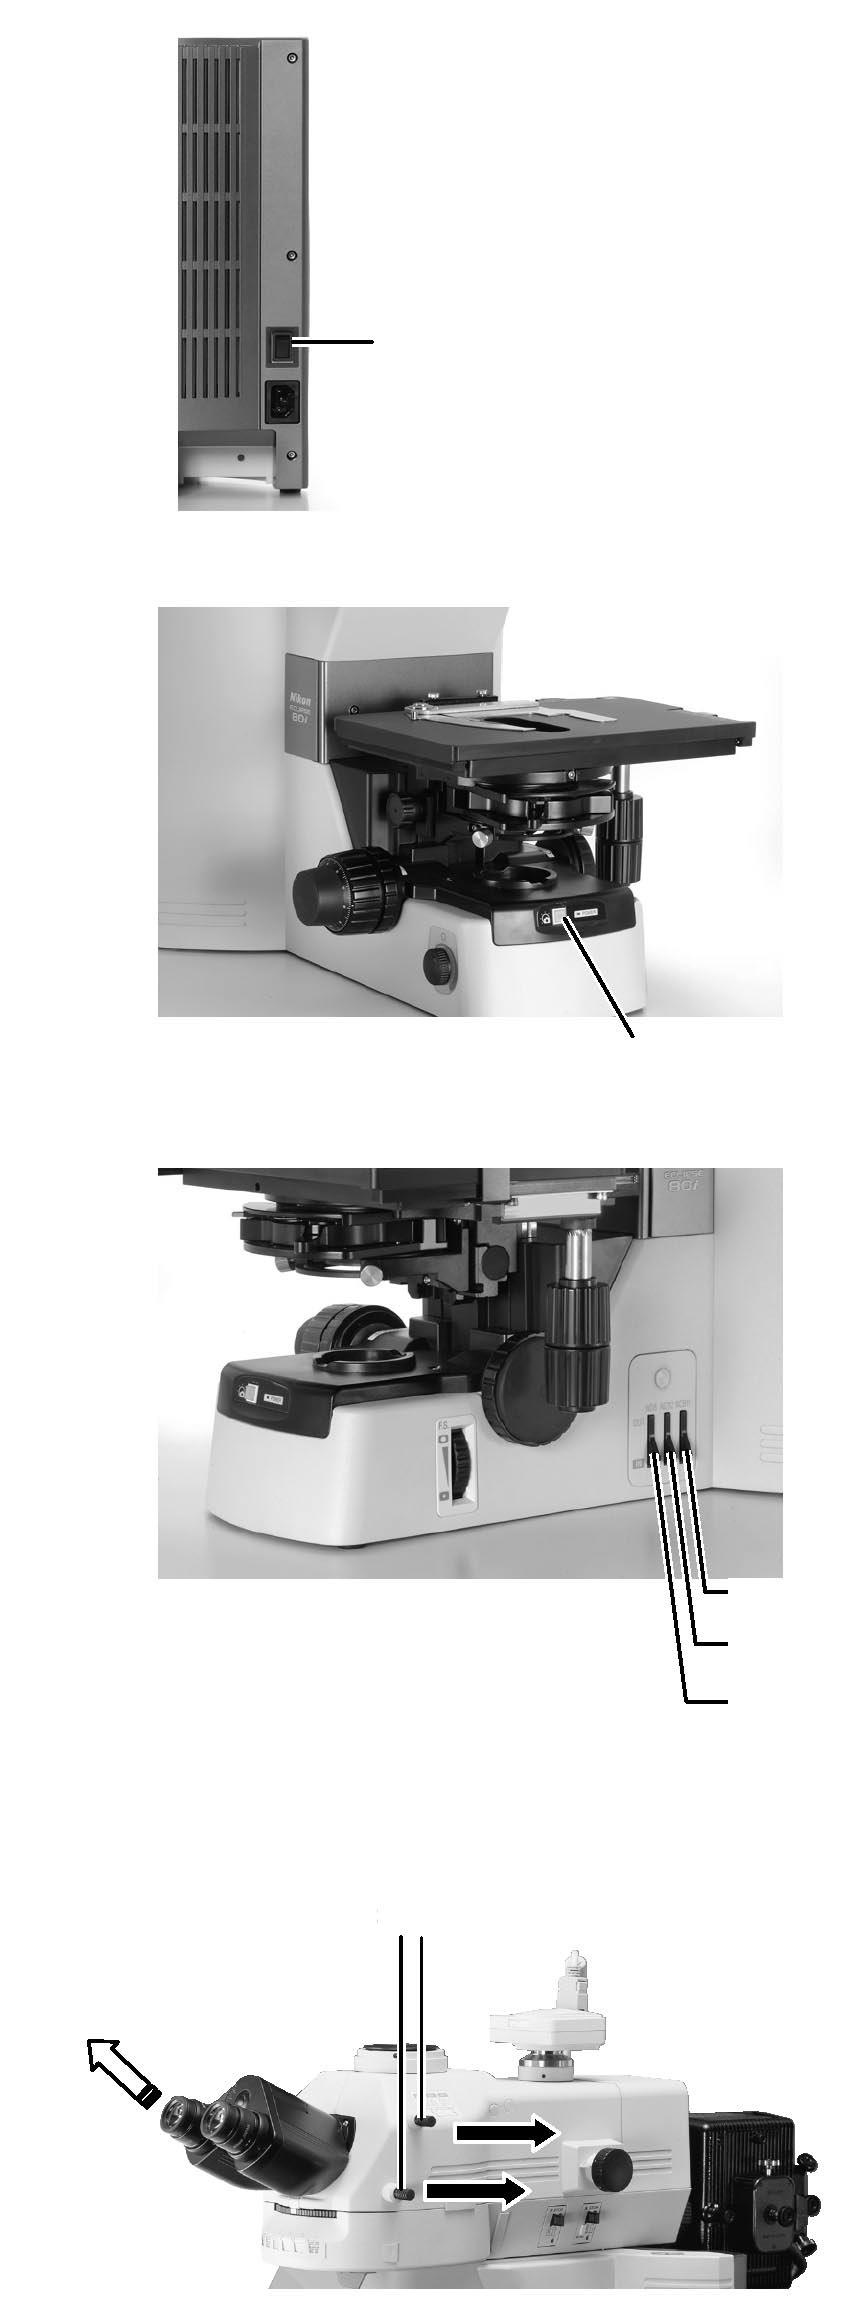 3.3 Mikroskopování ve světlém poli 1. Zapněte mikroskop. C-Box a napájecí zdroj episkopické osvětlovací jednotky nemusí být zapnuté.